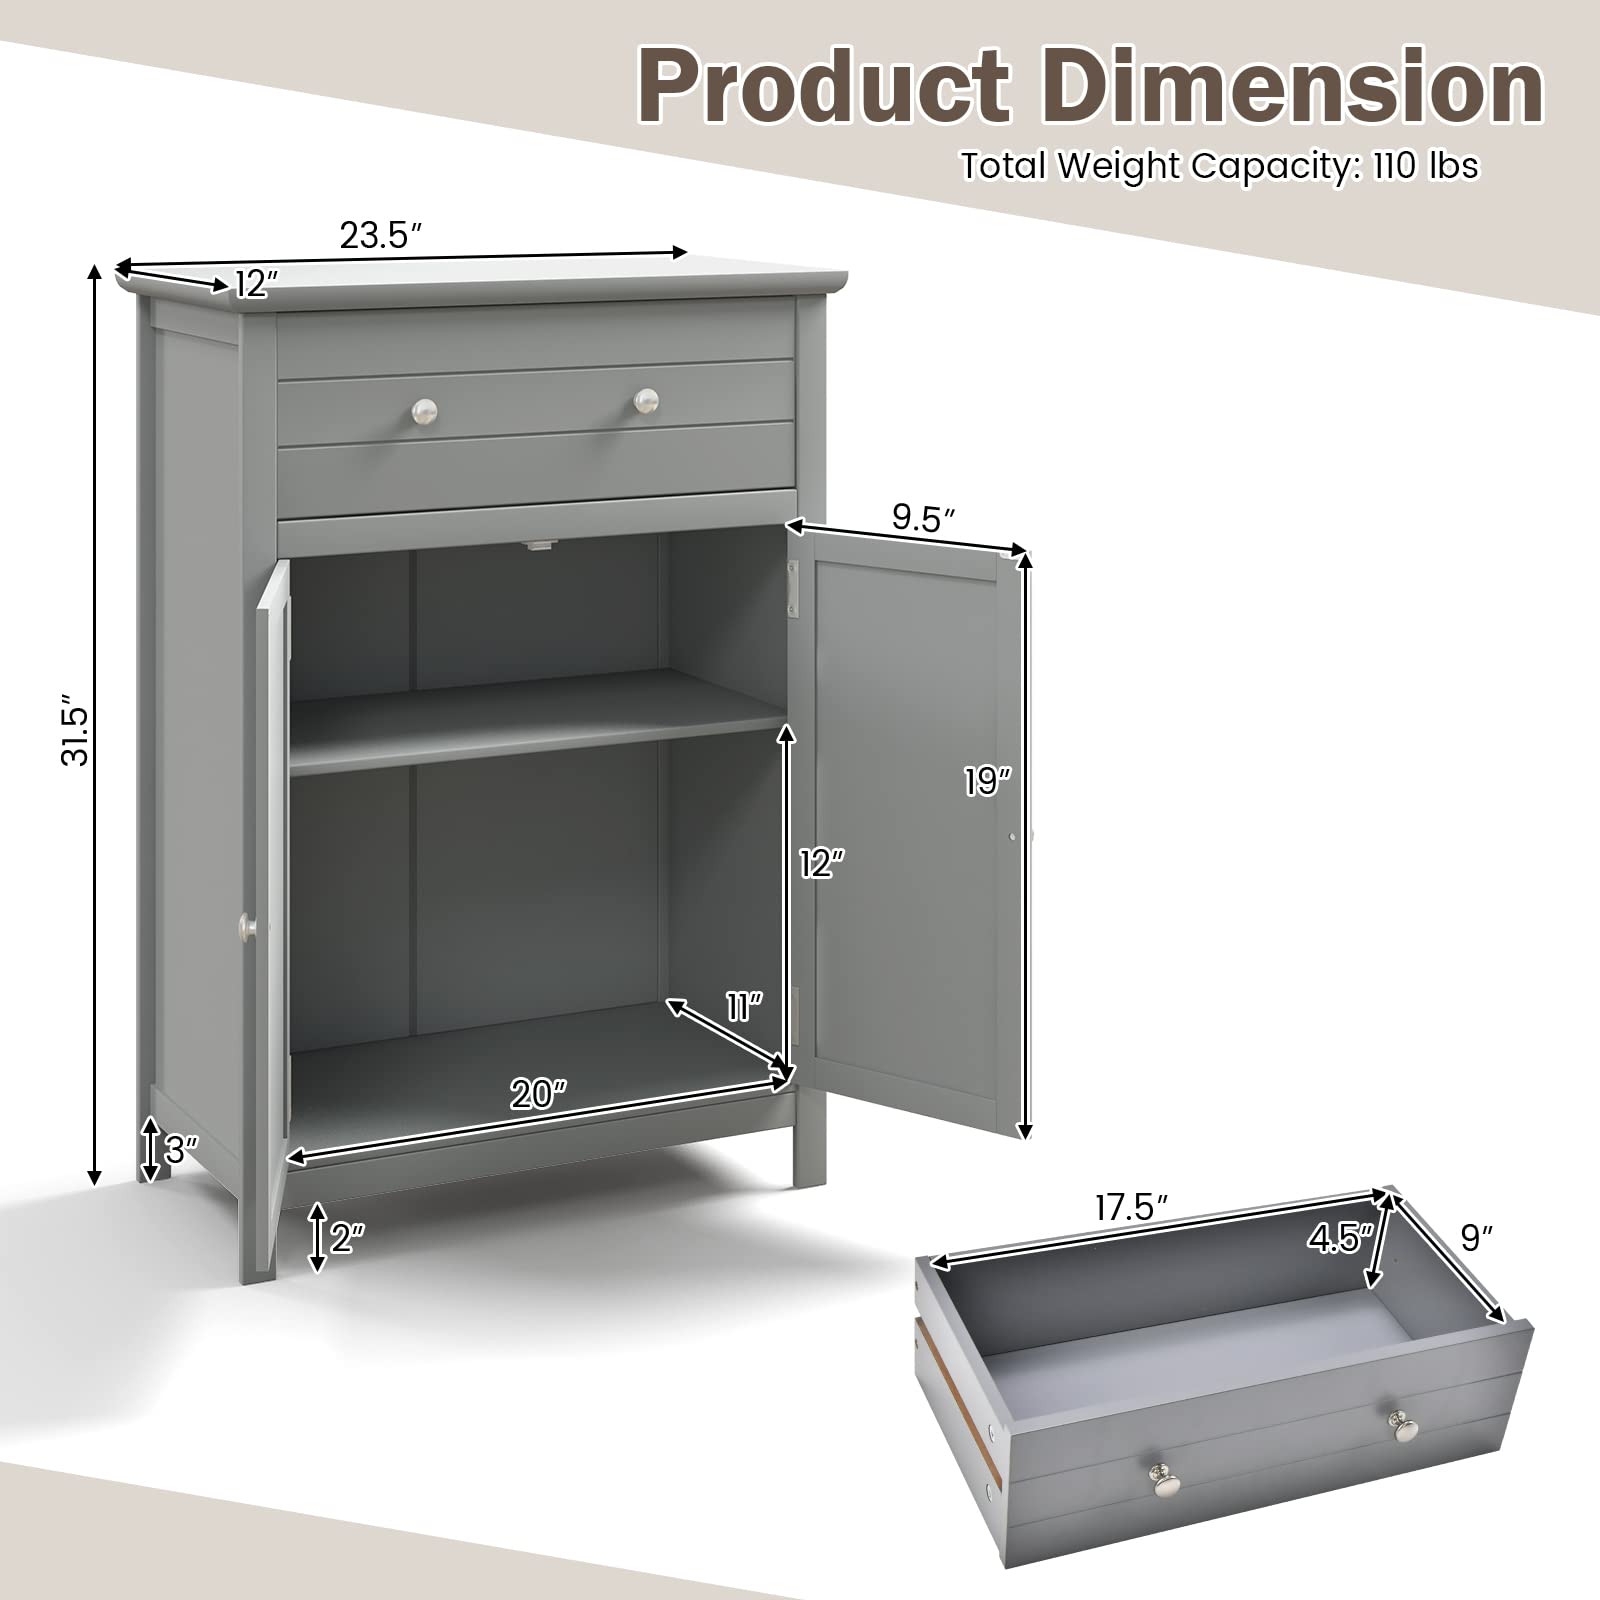 Giantex Bathroom Storage Cabinet with Drawer - Floor Cabinet with Doors, Adjustable Shelf